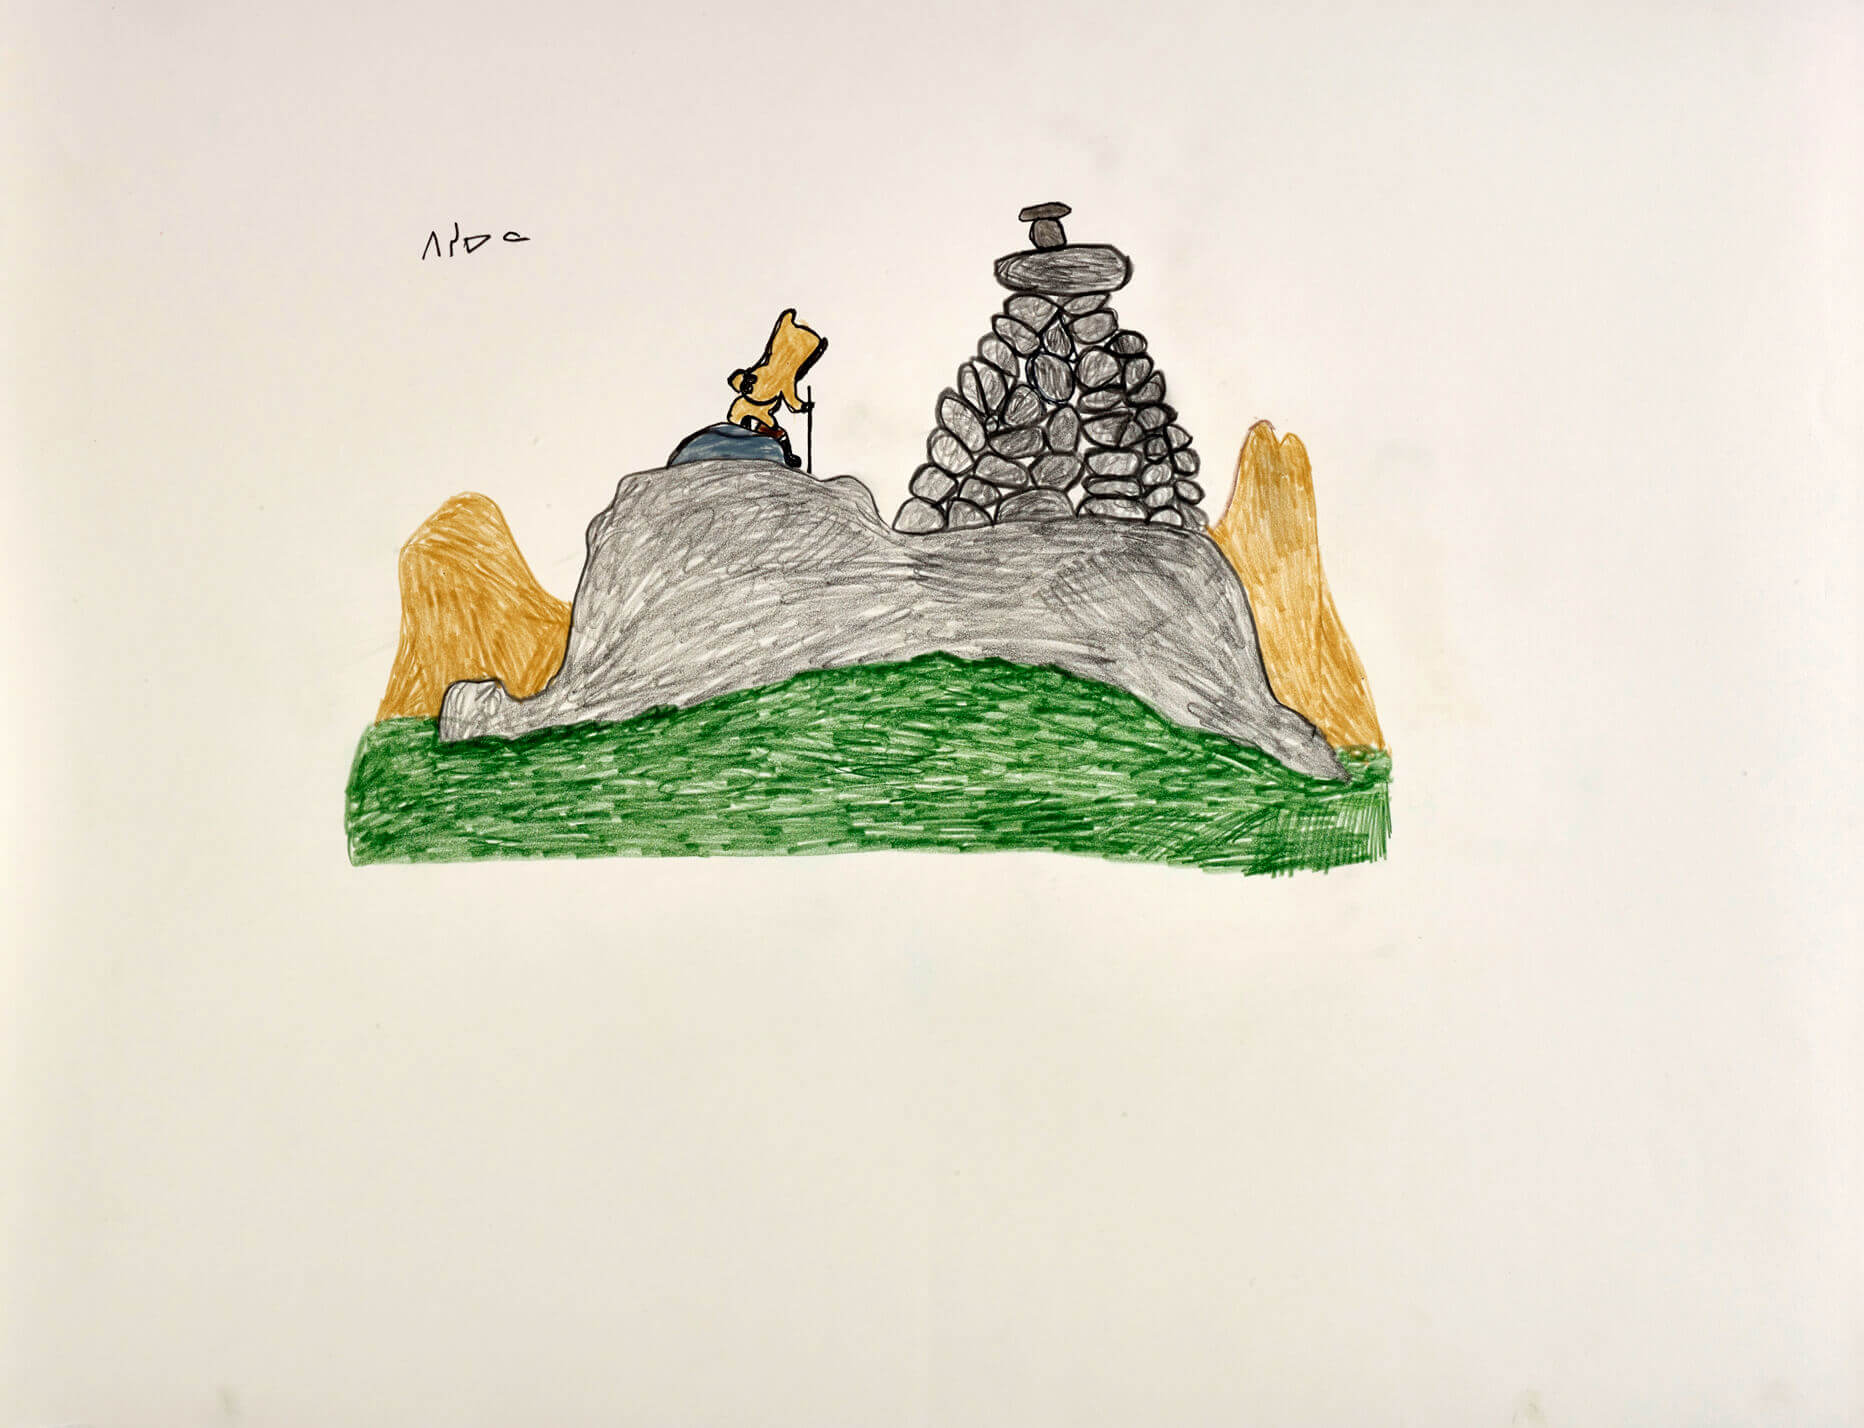 Pitseolak Ashoona, Sans titre (Figure solitaire dans un paysage), v. 1980